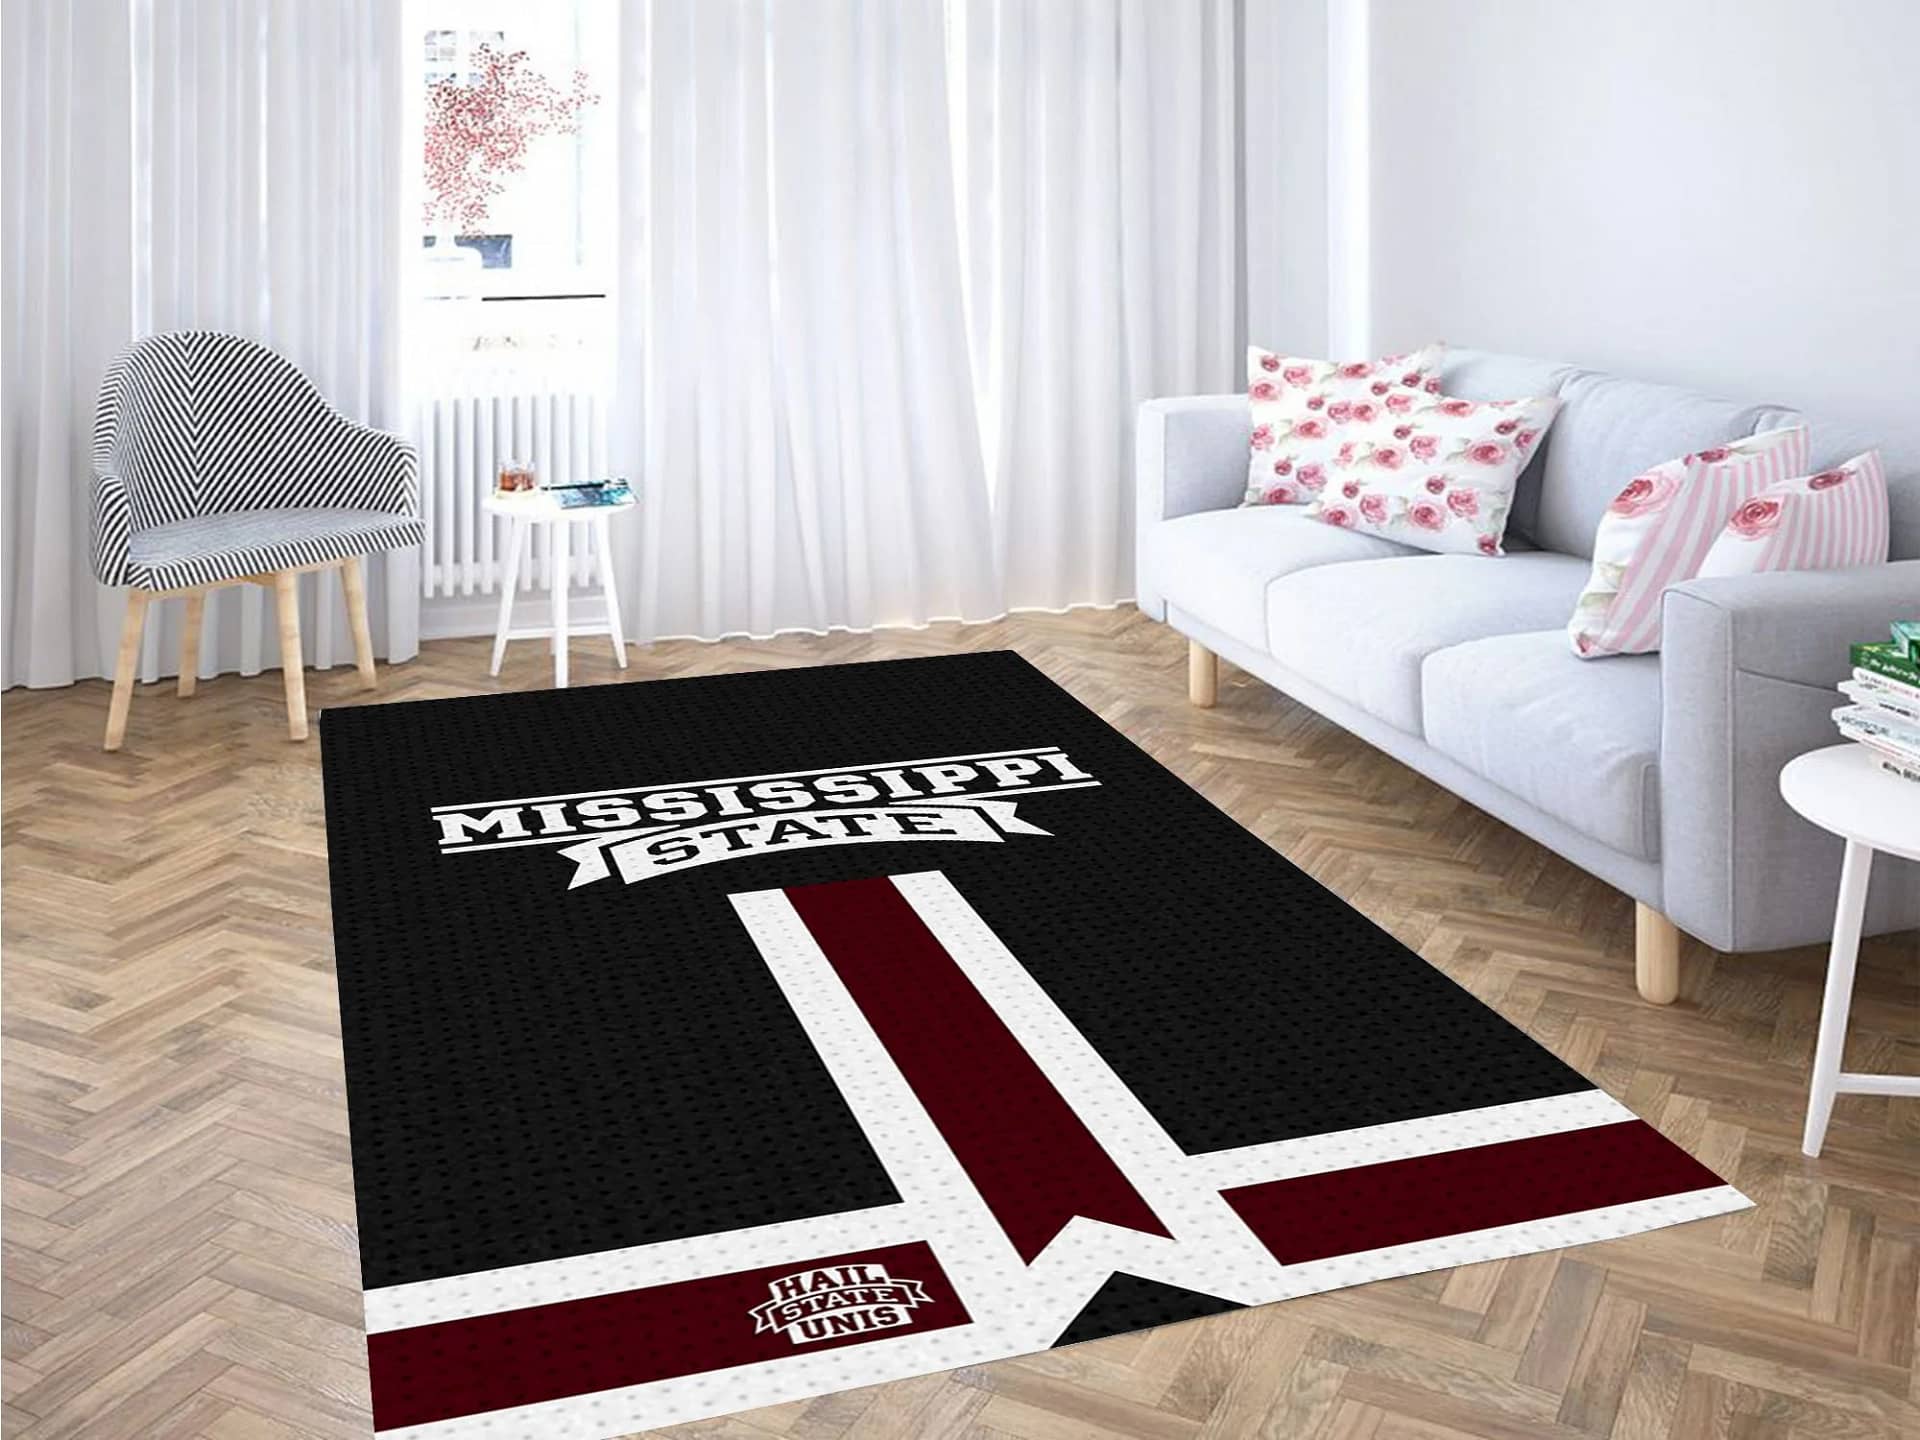 Mississippi State Bulldogs Baseball Carpet Rug